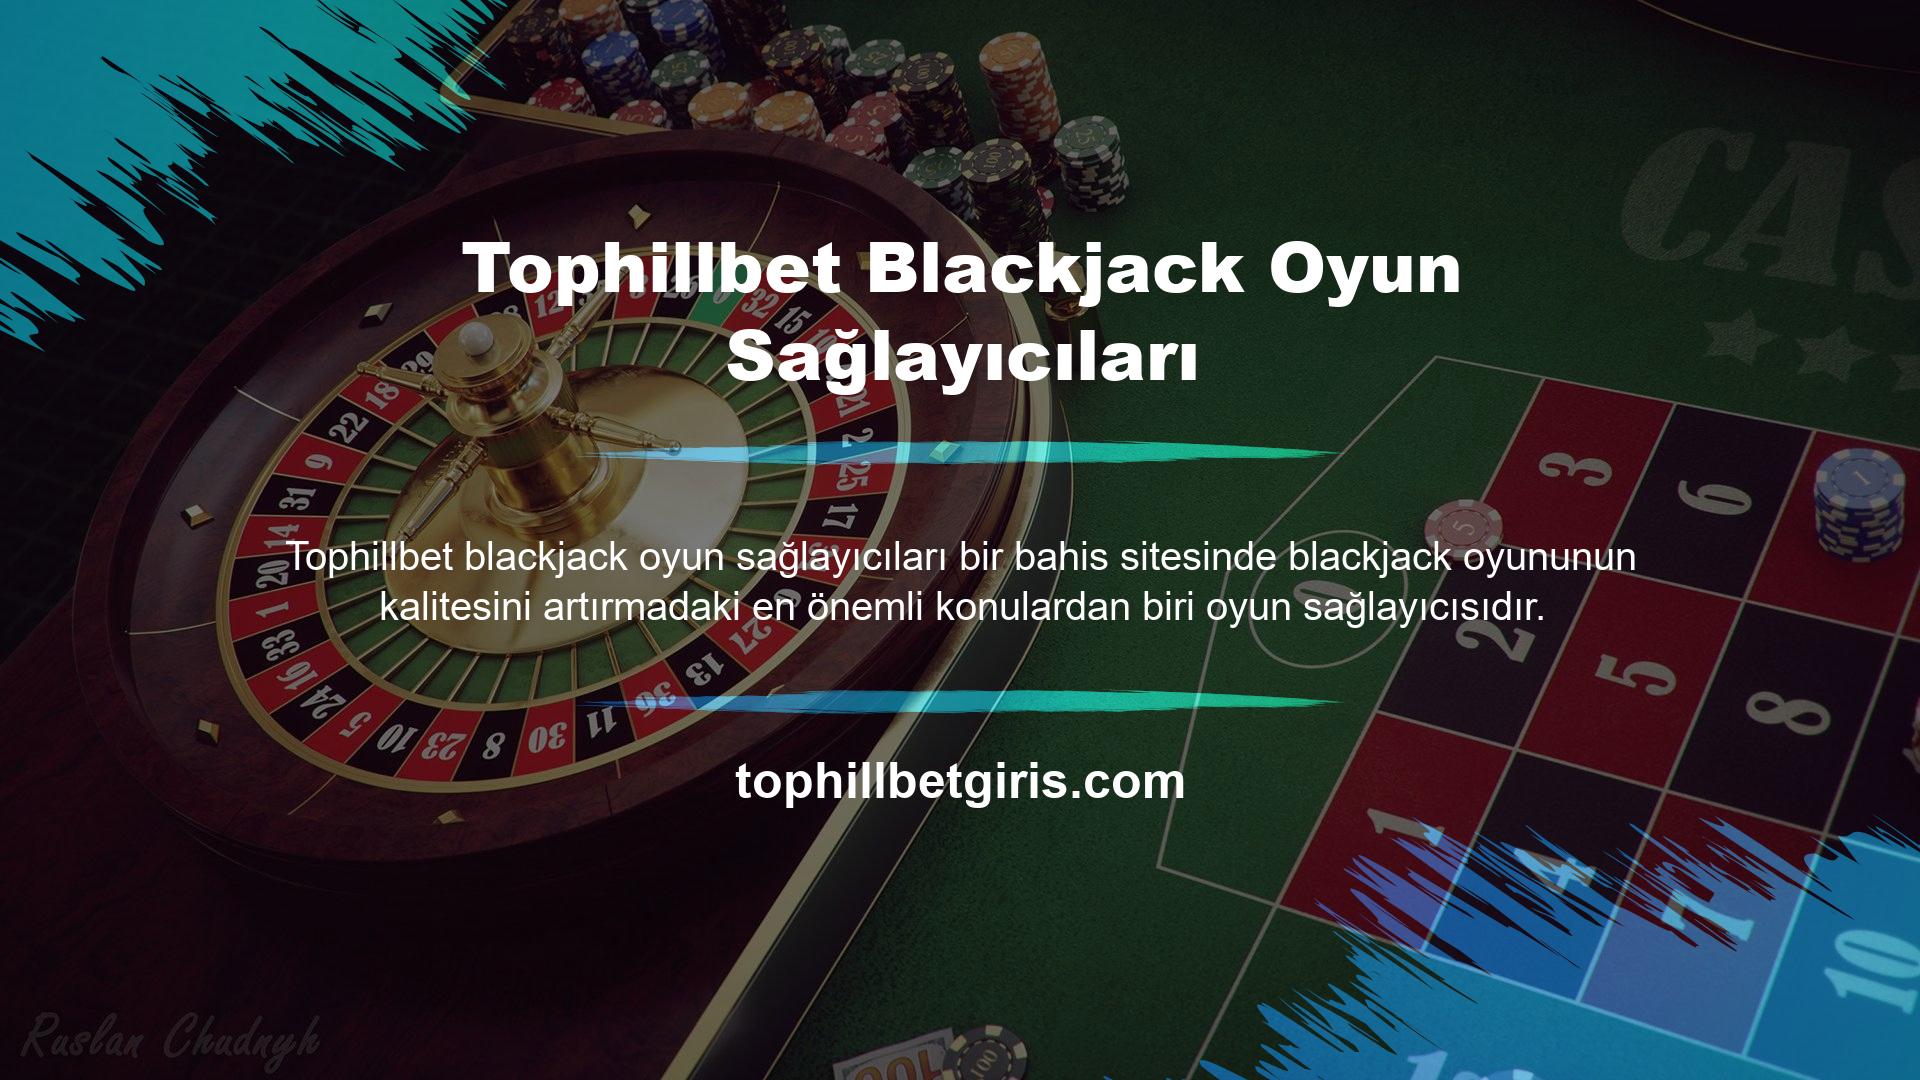 Bu çevrimiçi bahis sitesi, sektördeki en iyi oyun yazılımı şirketlerinin blackjack oyunlarını oynuyor